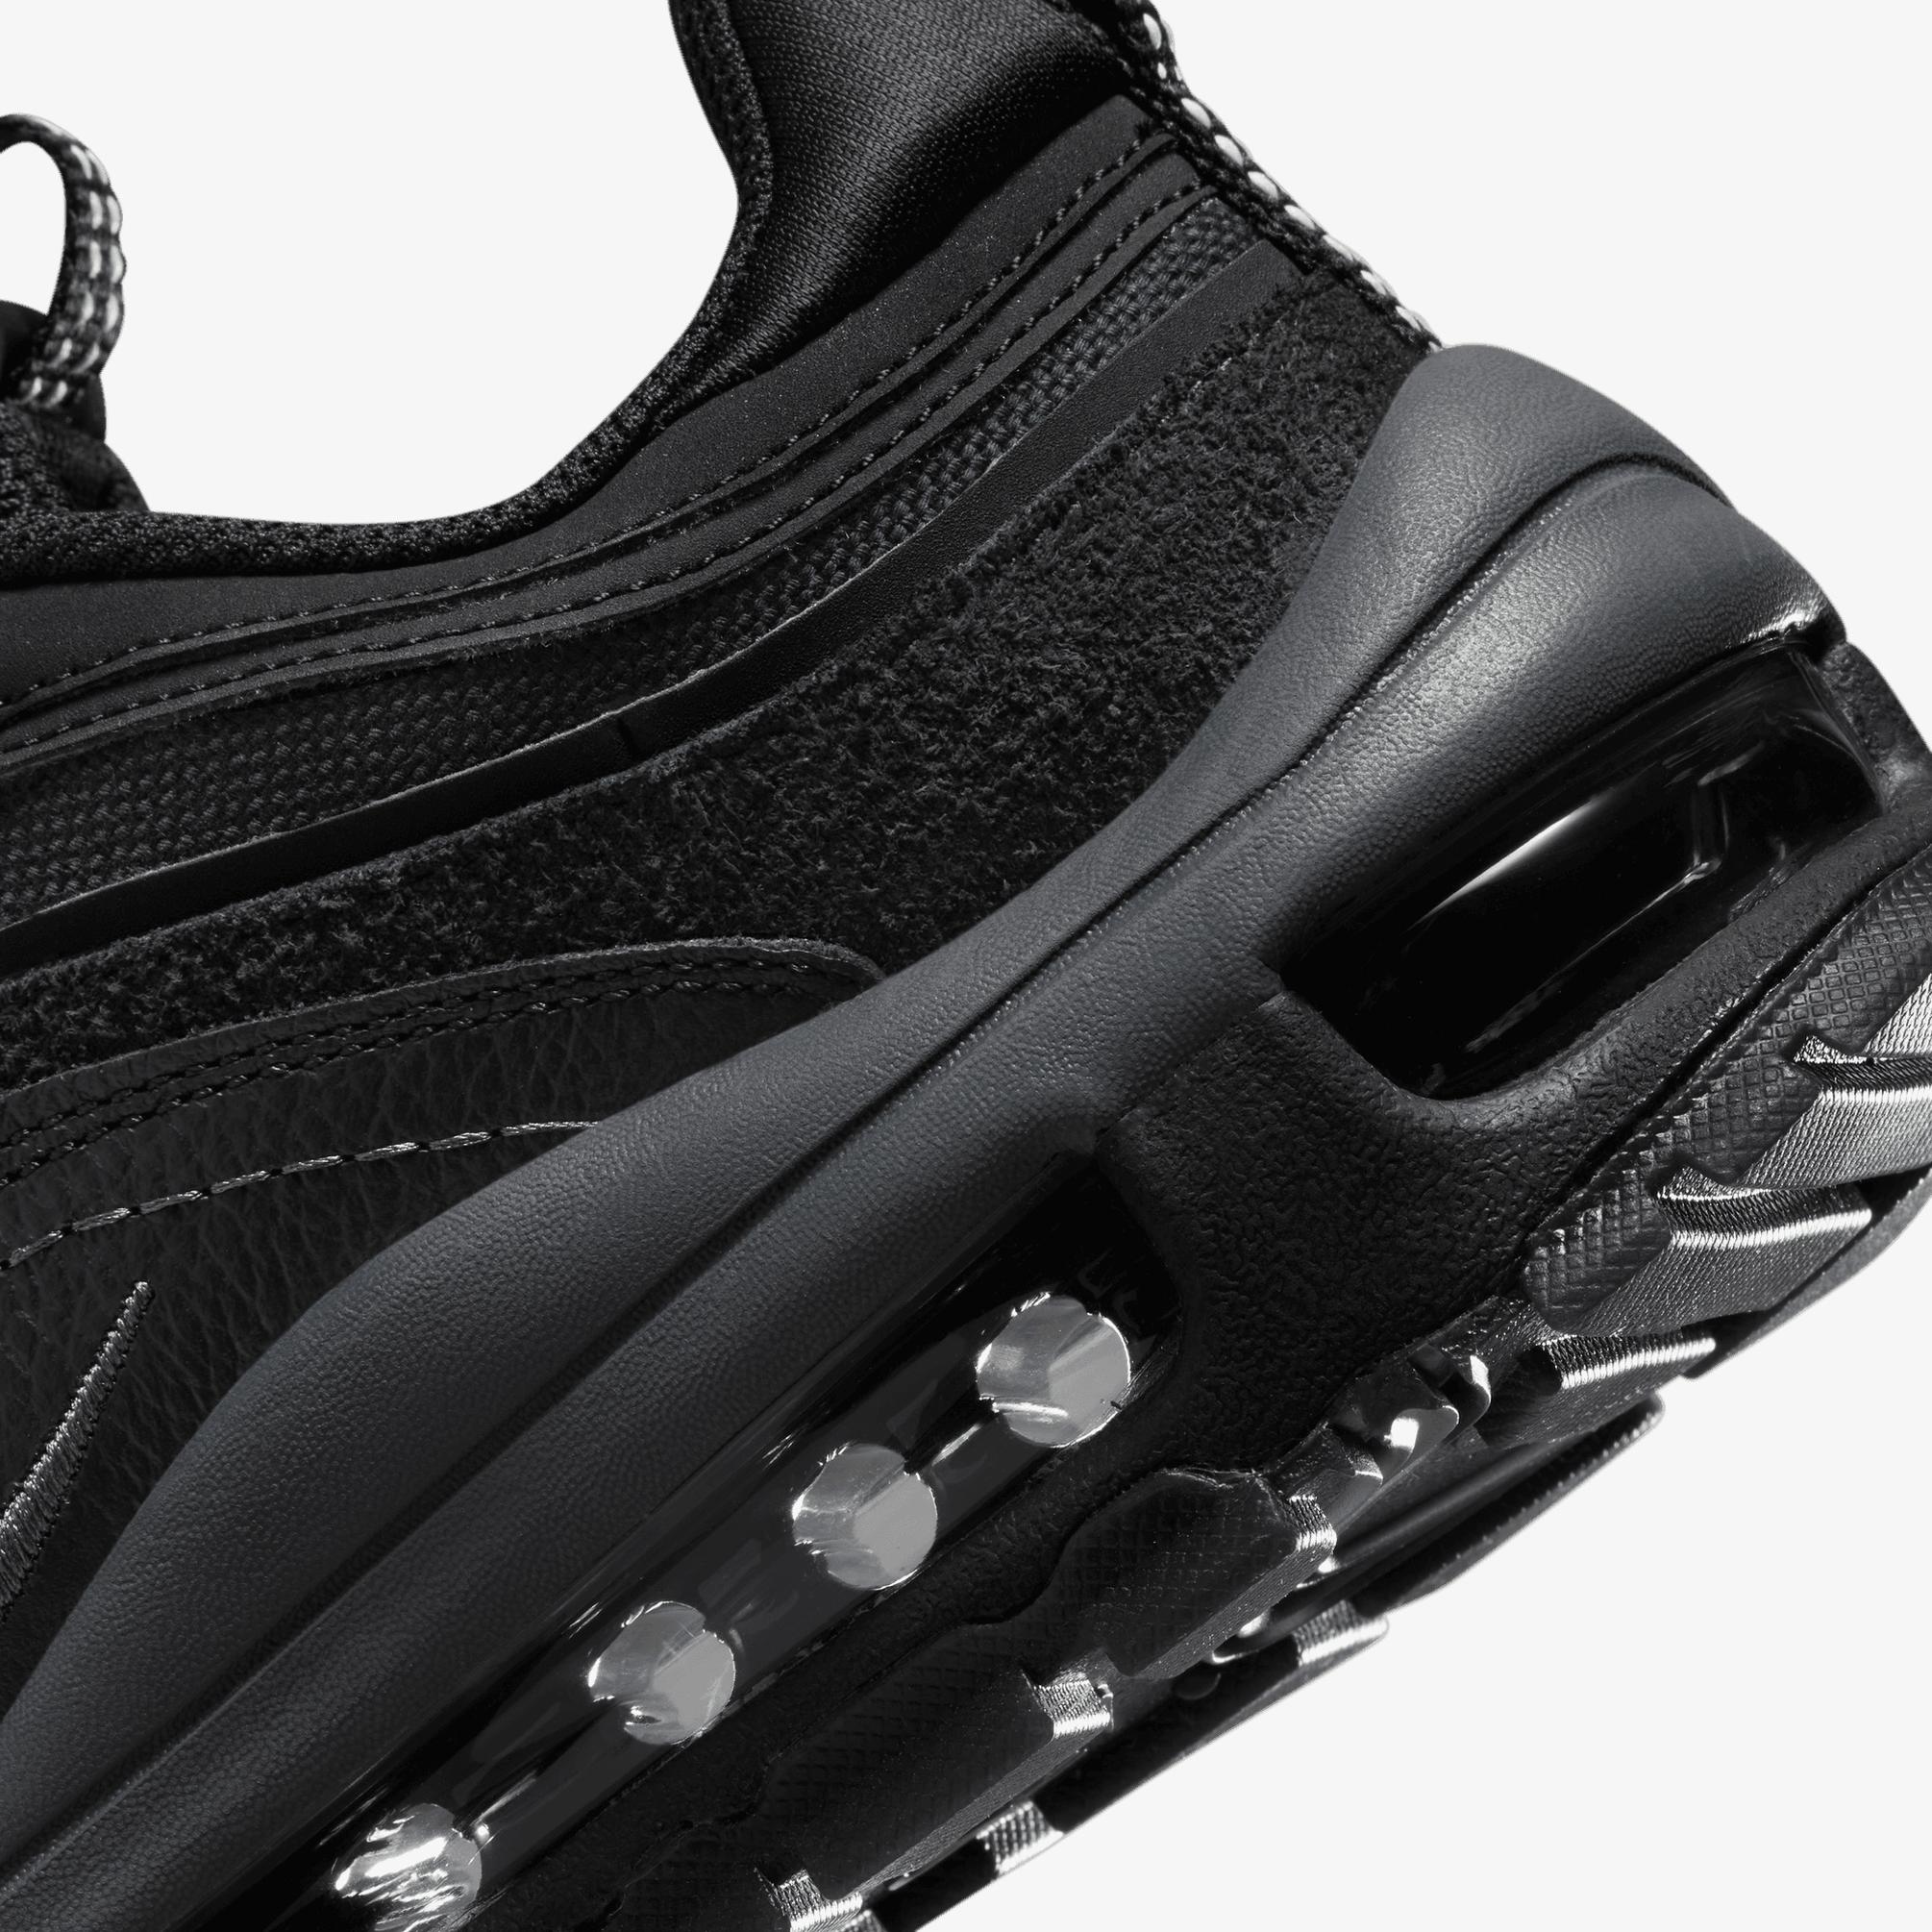  Nike Air Max 97 Futura Kadın Siyah Spor Ayakkabı